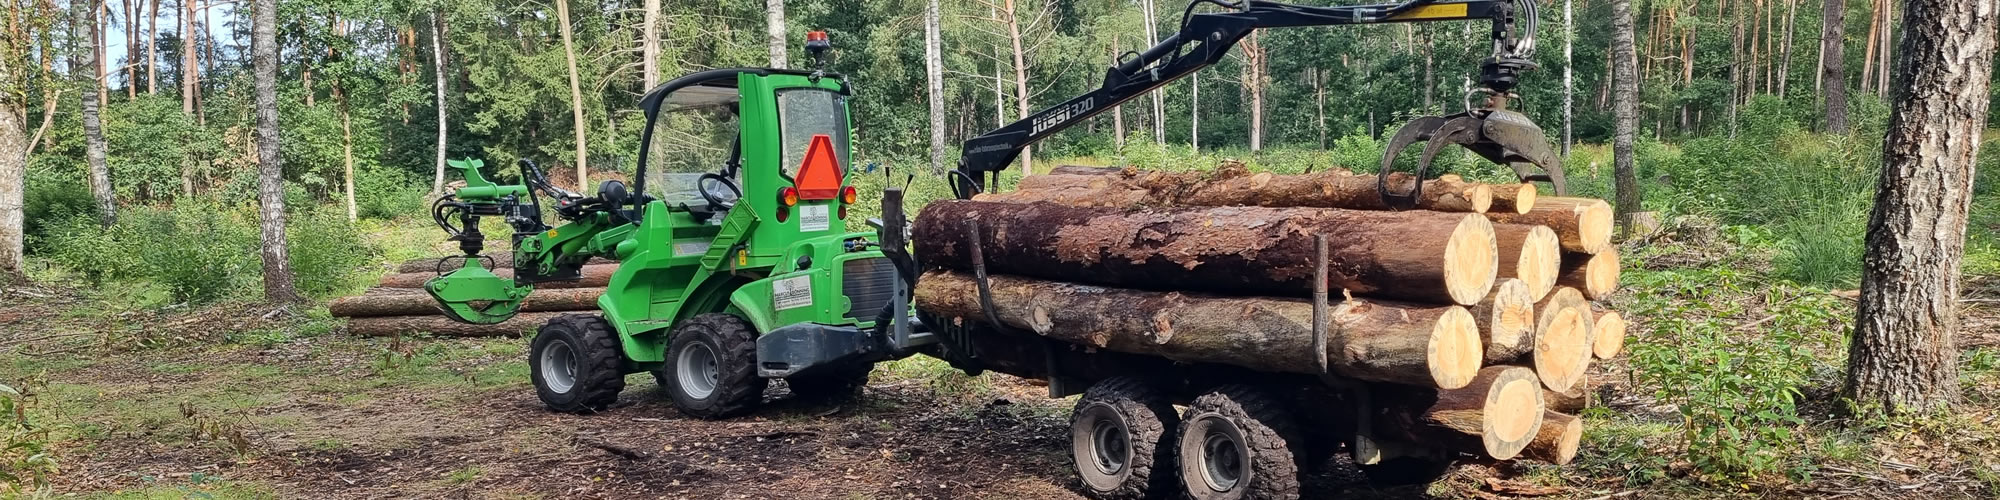 Forstarbeiten und Landschaftspflege • Forstbetrieb Marcus Bönning